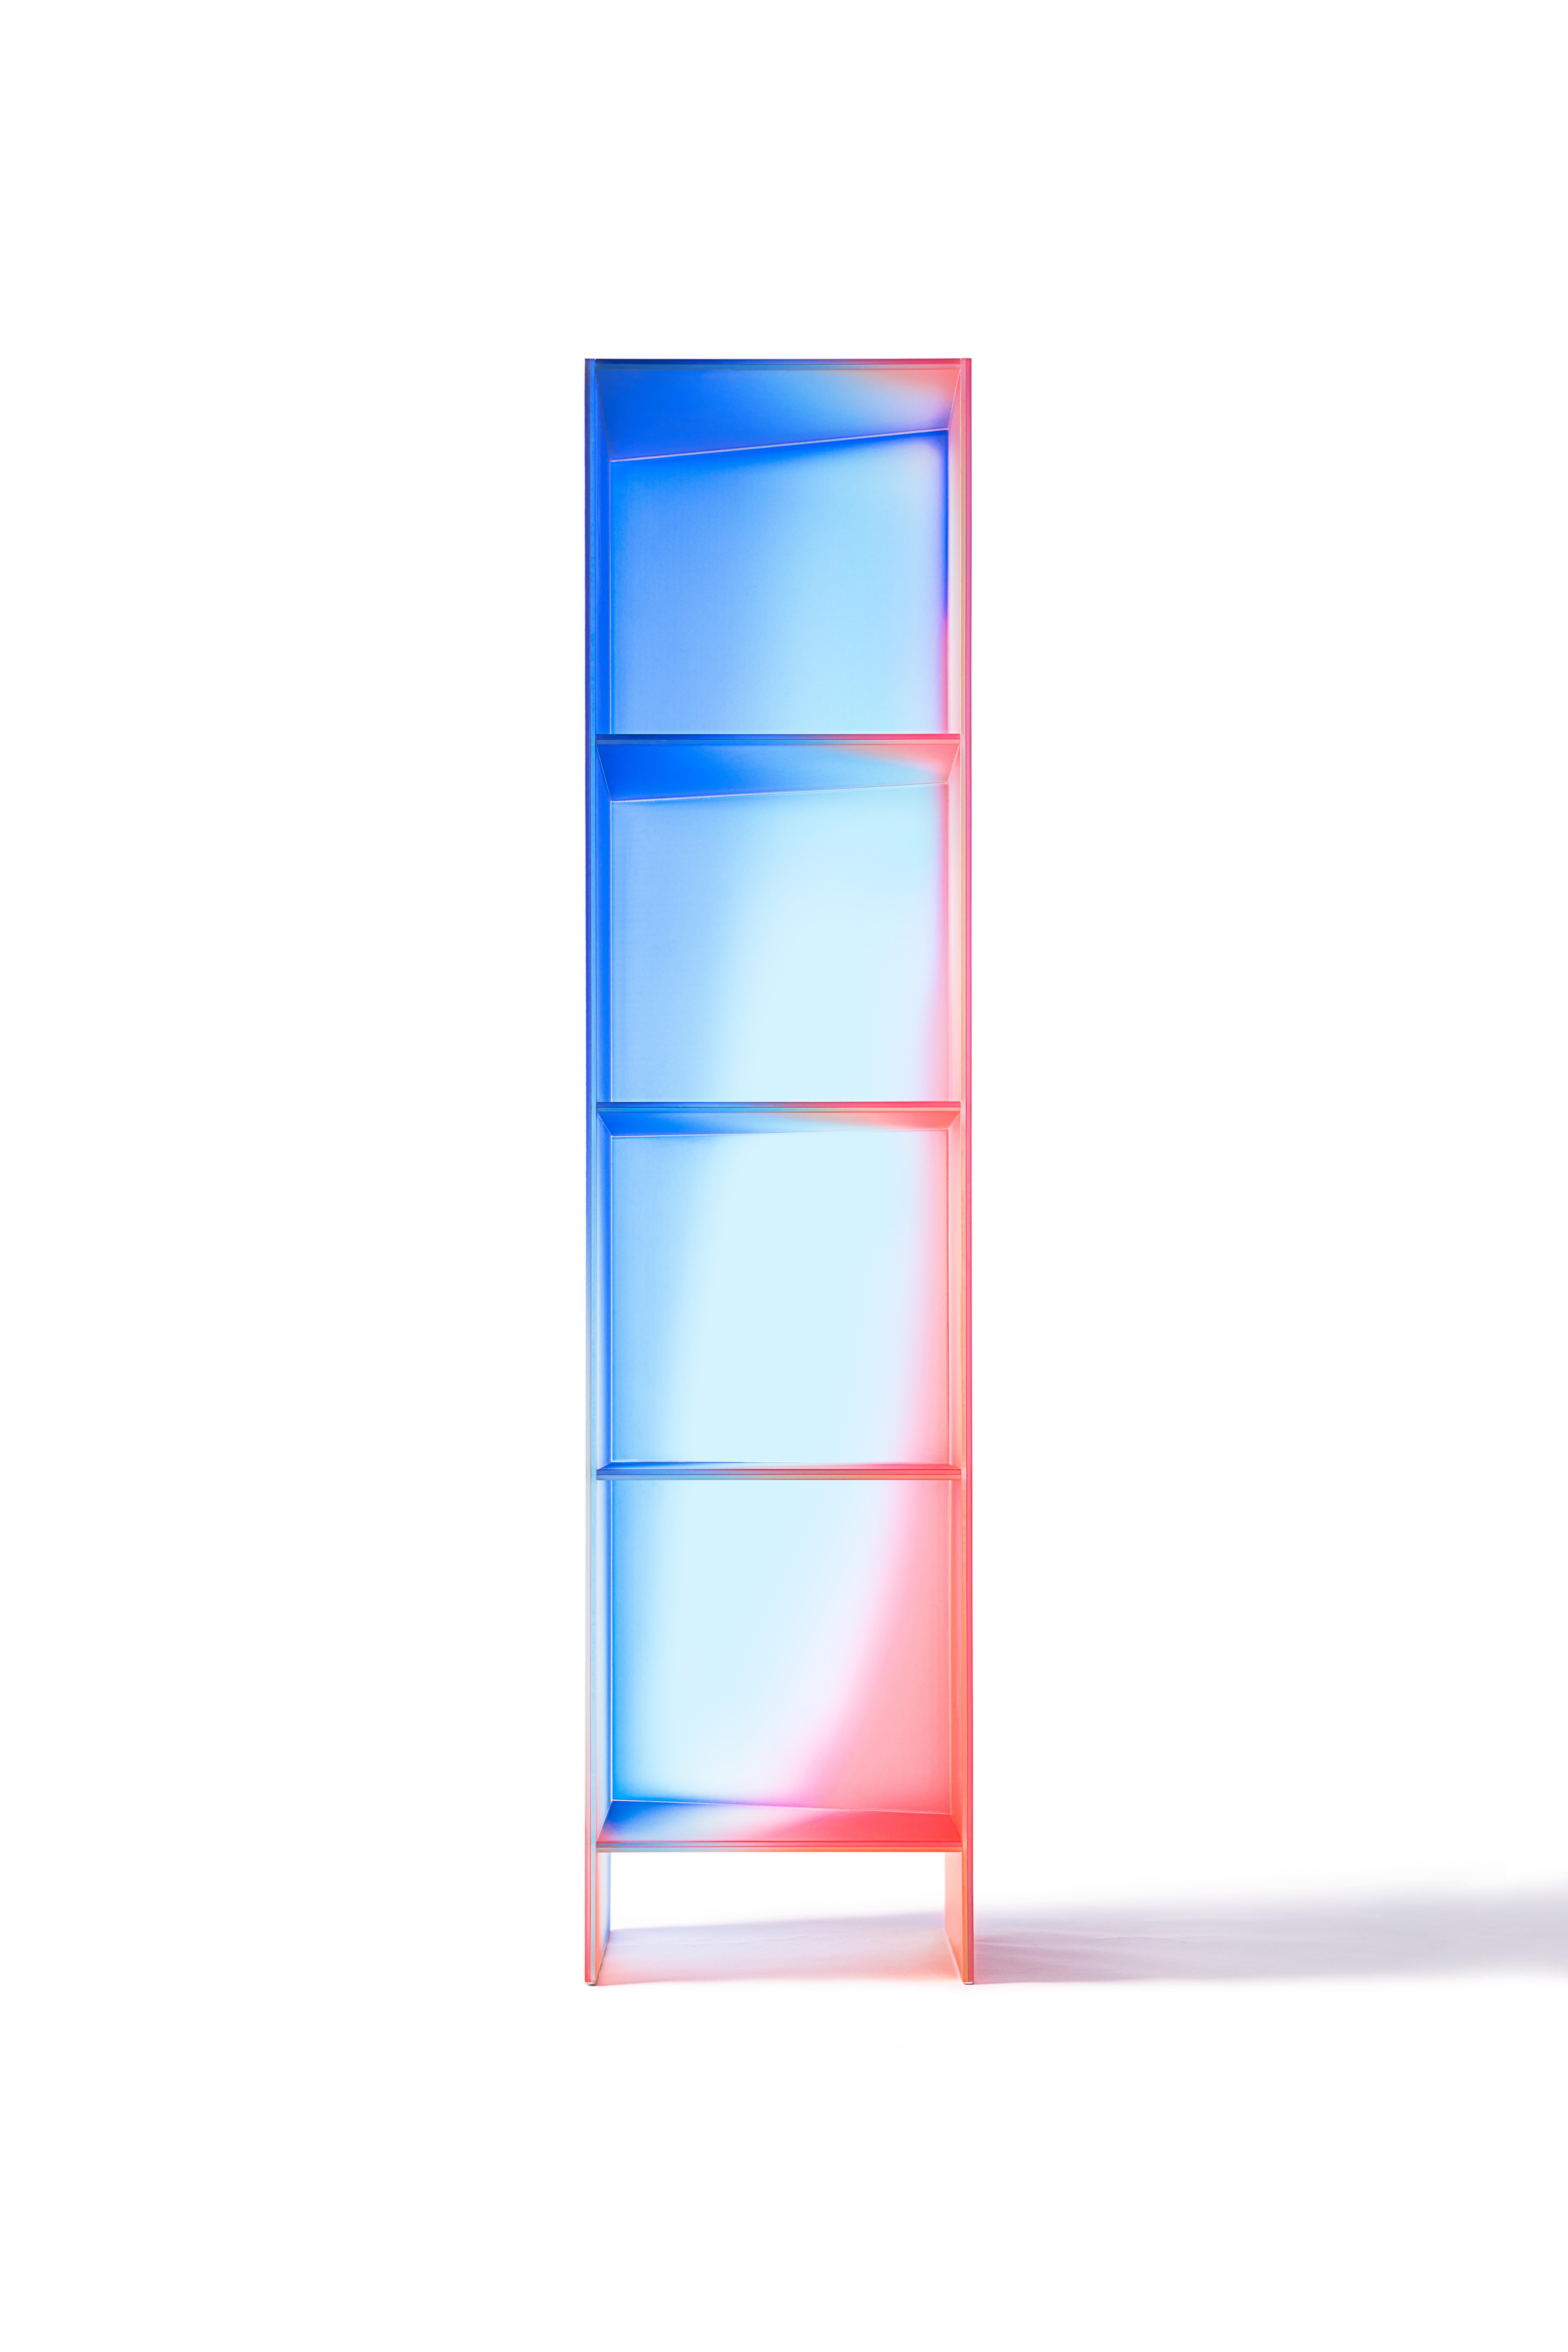 kollektion 'HALO' von Buzao - Bücherregal oder Regale
Laminiertes dichroitisches Glas, Farbverlauf
Maße: 42 x 40 x H 180 cm

Das Studio Buzao aus Guangzhou (China) erforscht Innovationen im Bereich Möbel- und Beleuchtungsdesign. Von Marmor bis